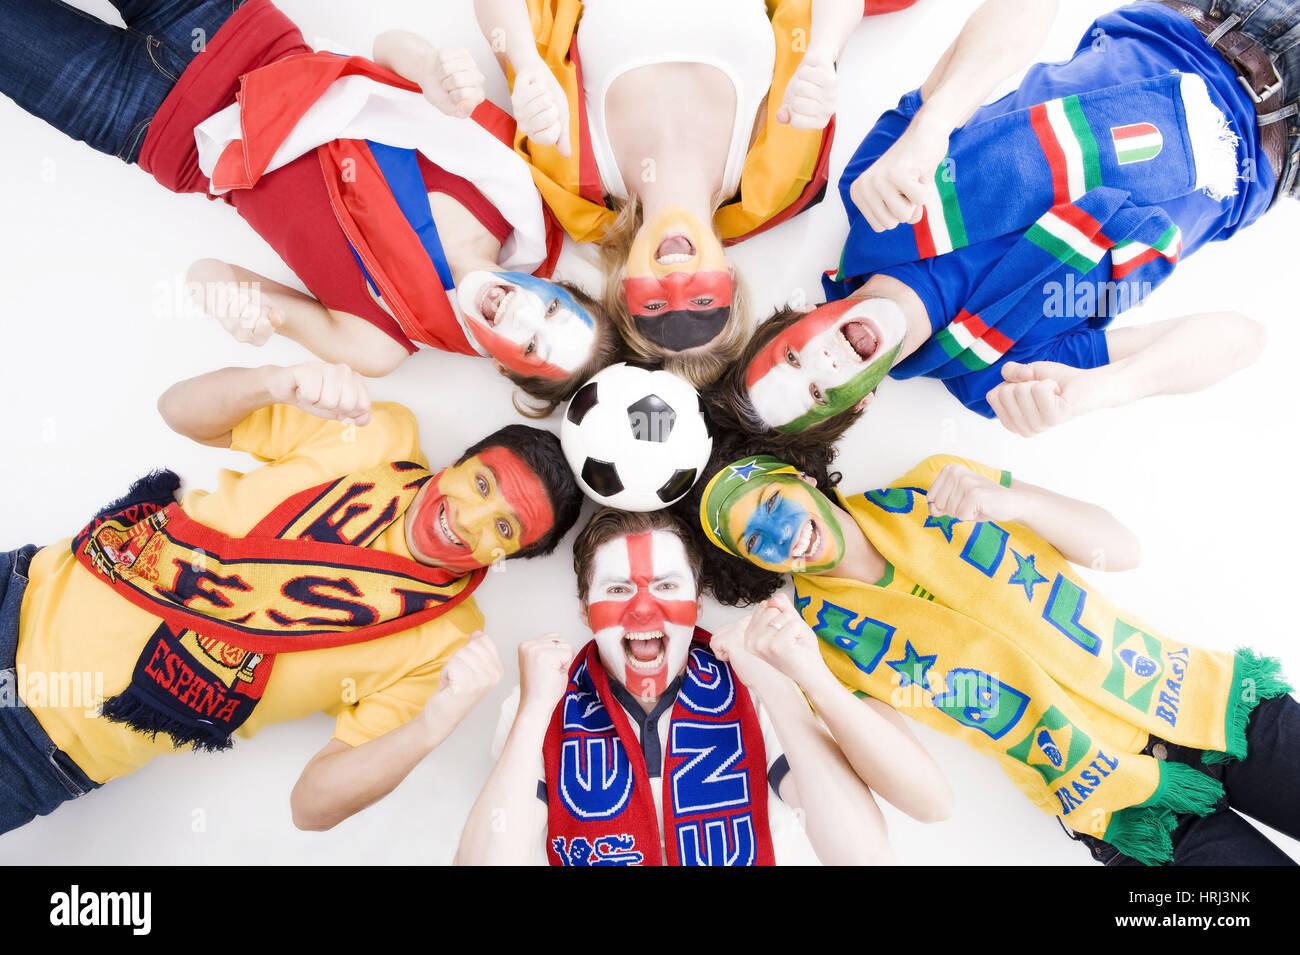 Football fans from all over the world, Fussballfans aus aller Welt zeigen Emotionen Stock Photo